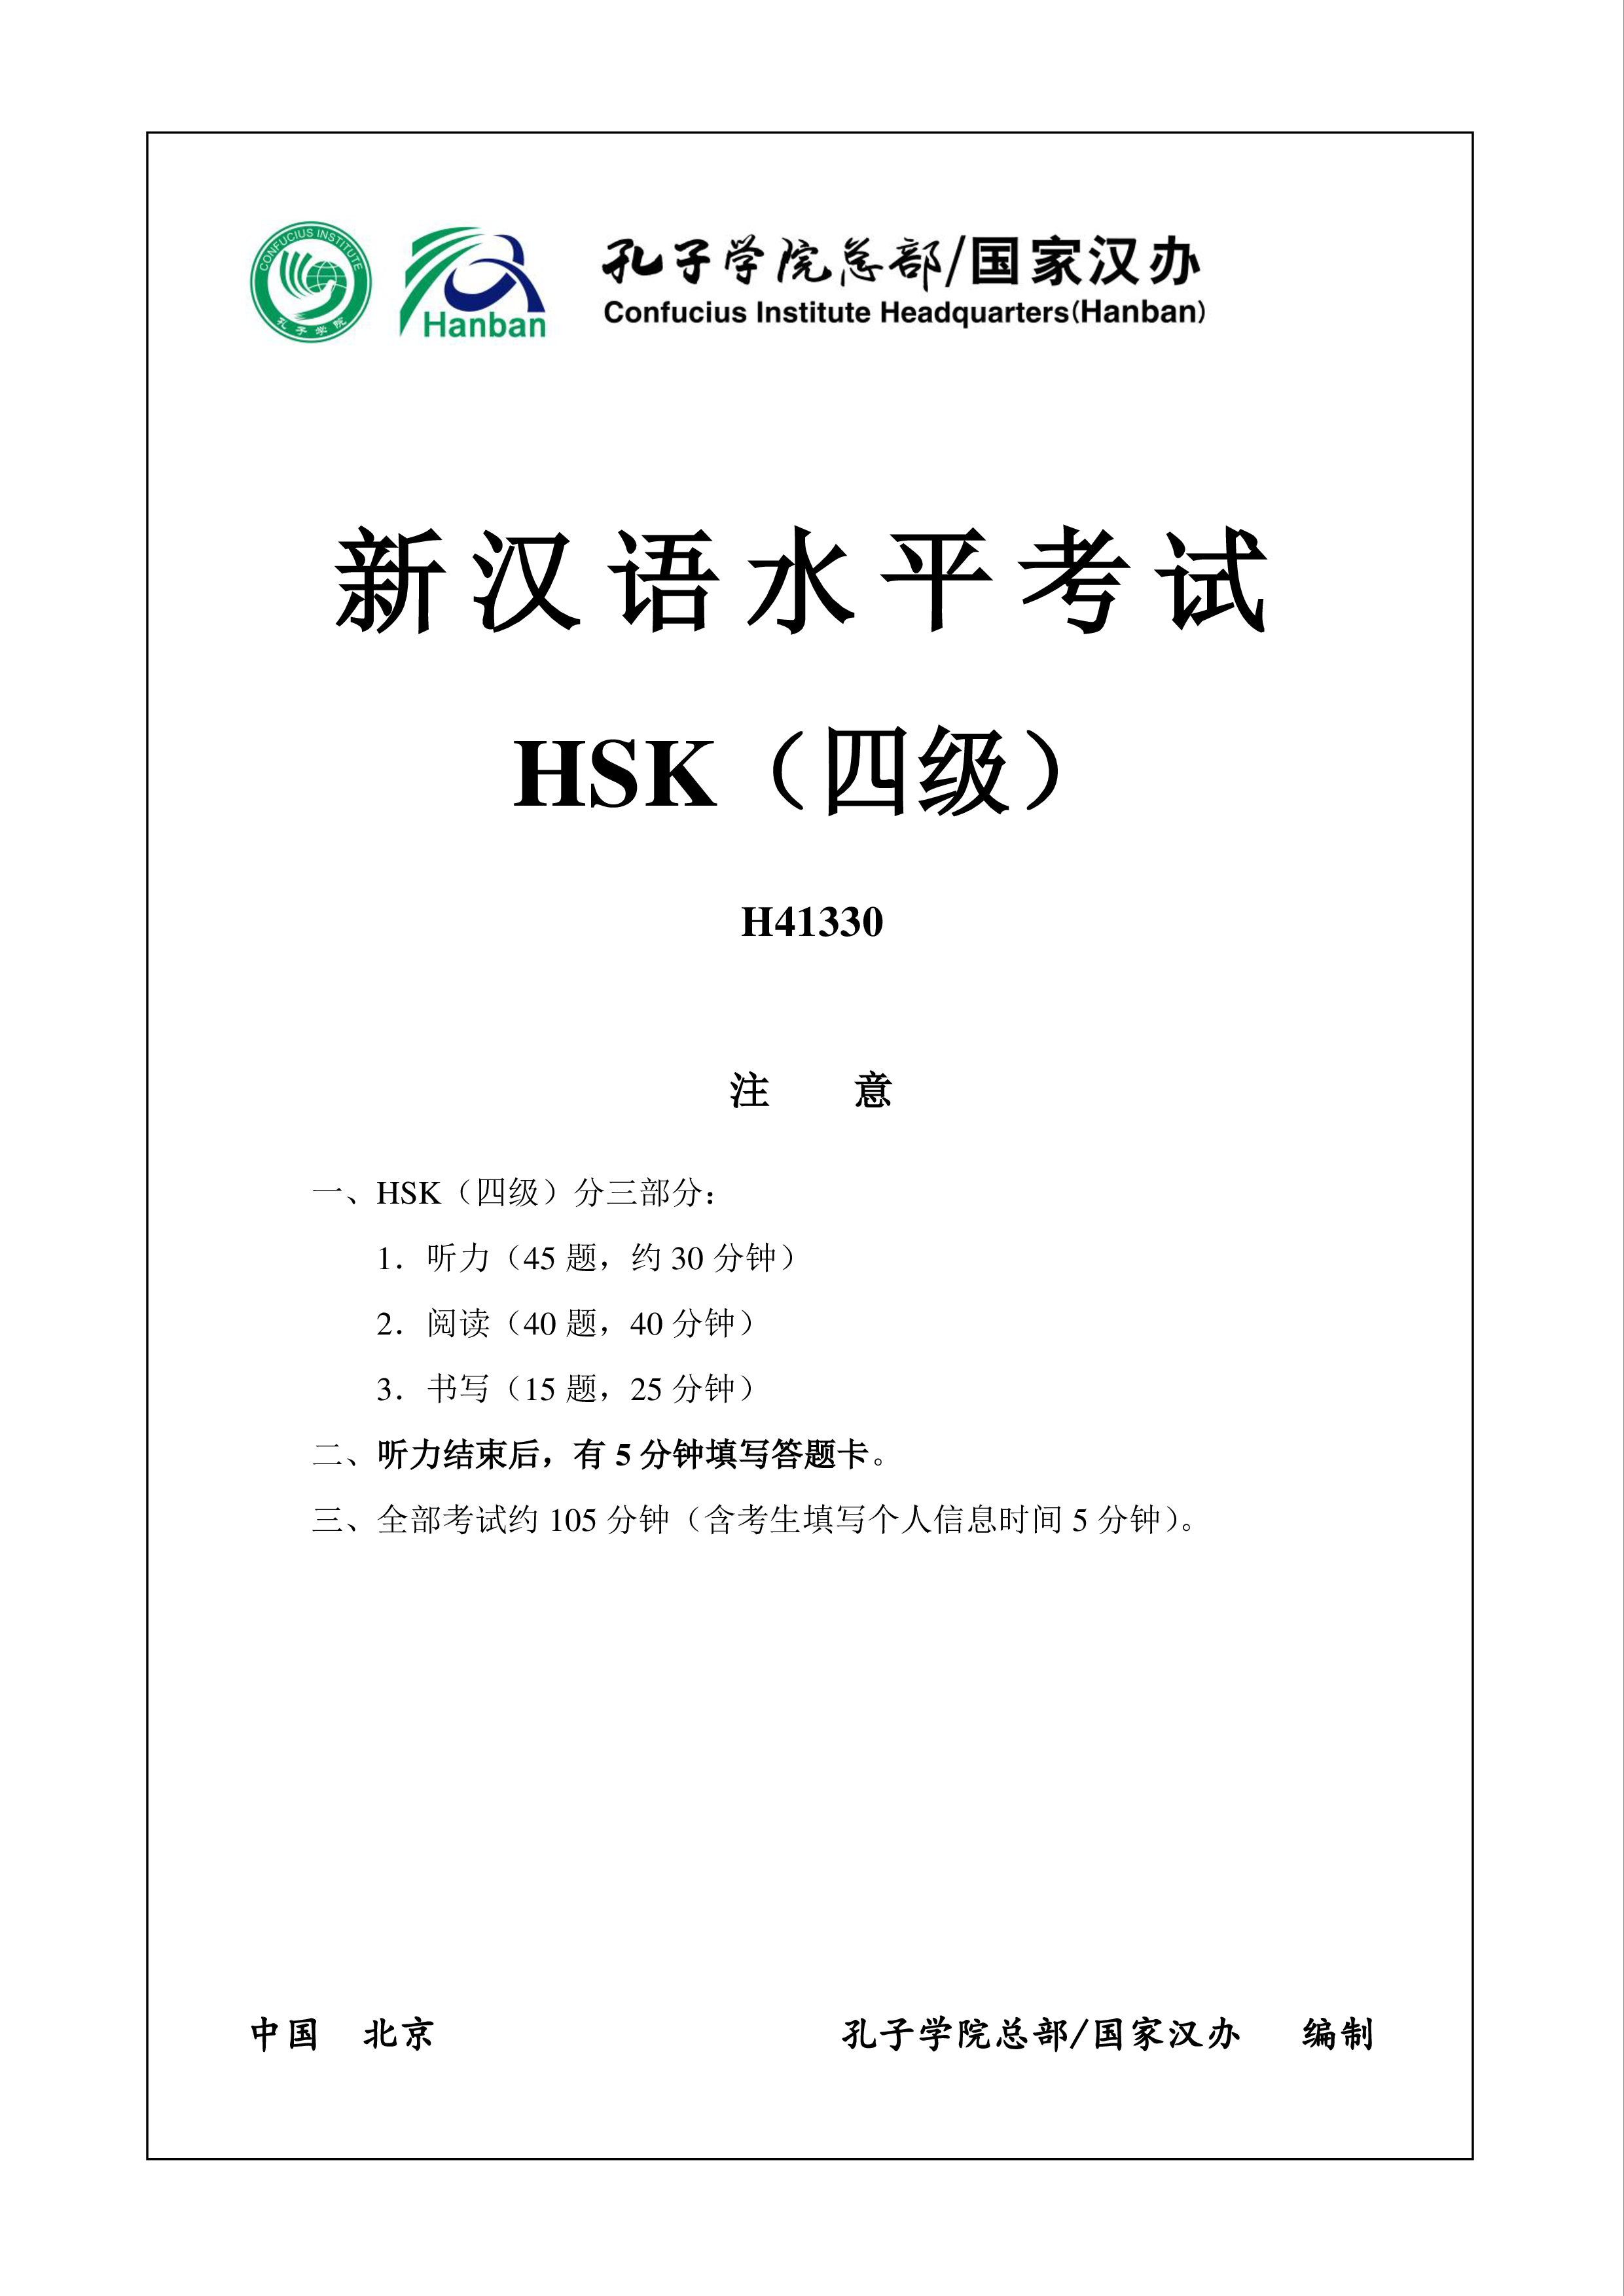 hsk4 chinees examen h41330 voorbeeld afbeelding 